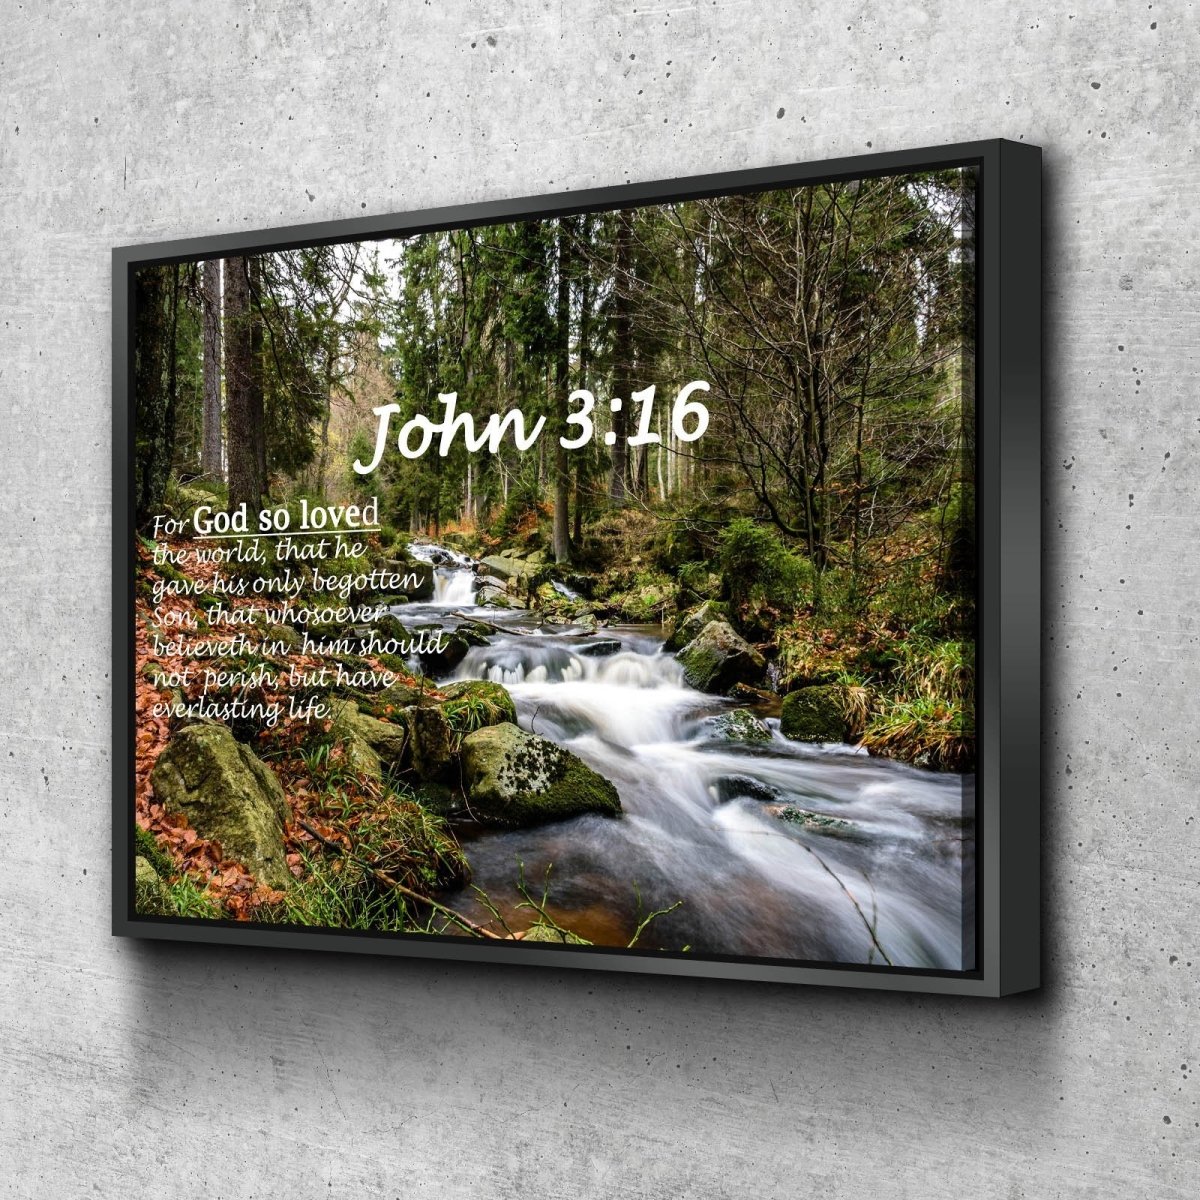 John 316 Kjv #14 Bible Verse Canvas Wall Art - Christian Canvas Wall Art